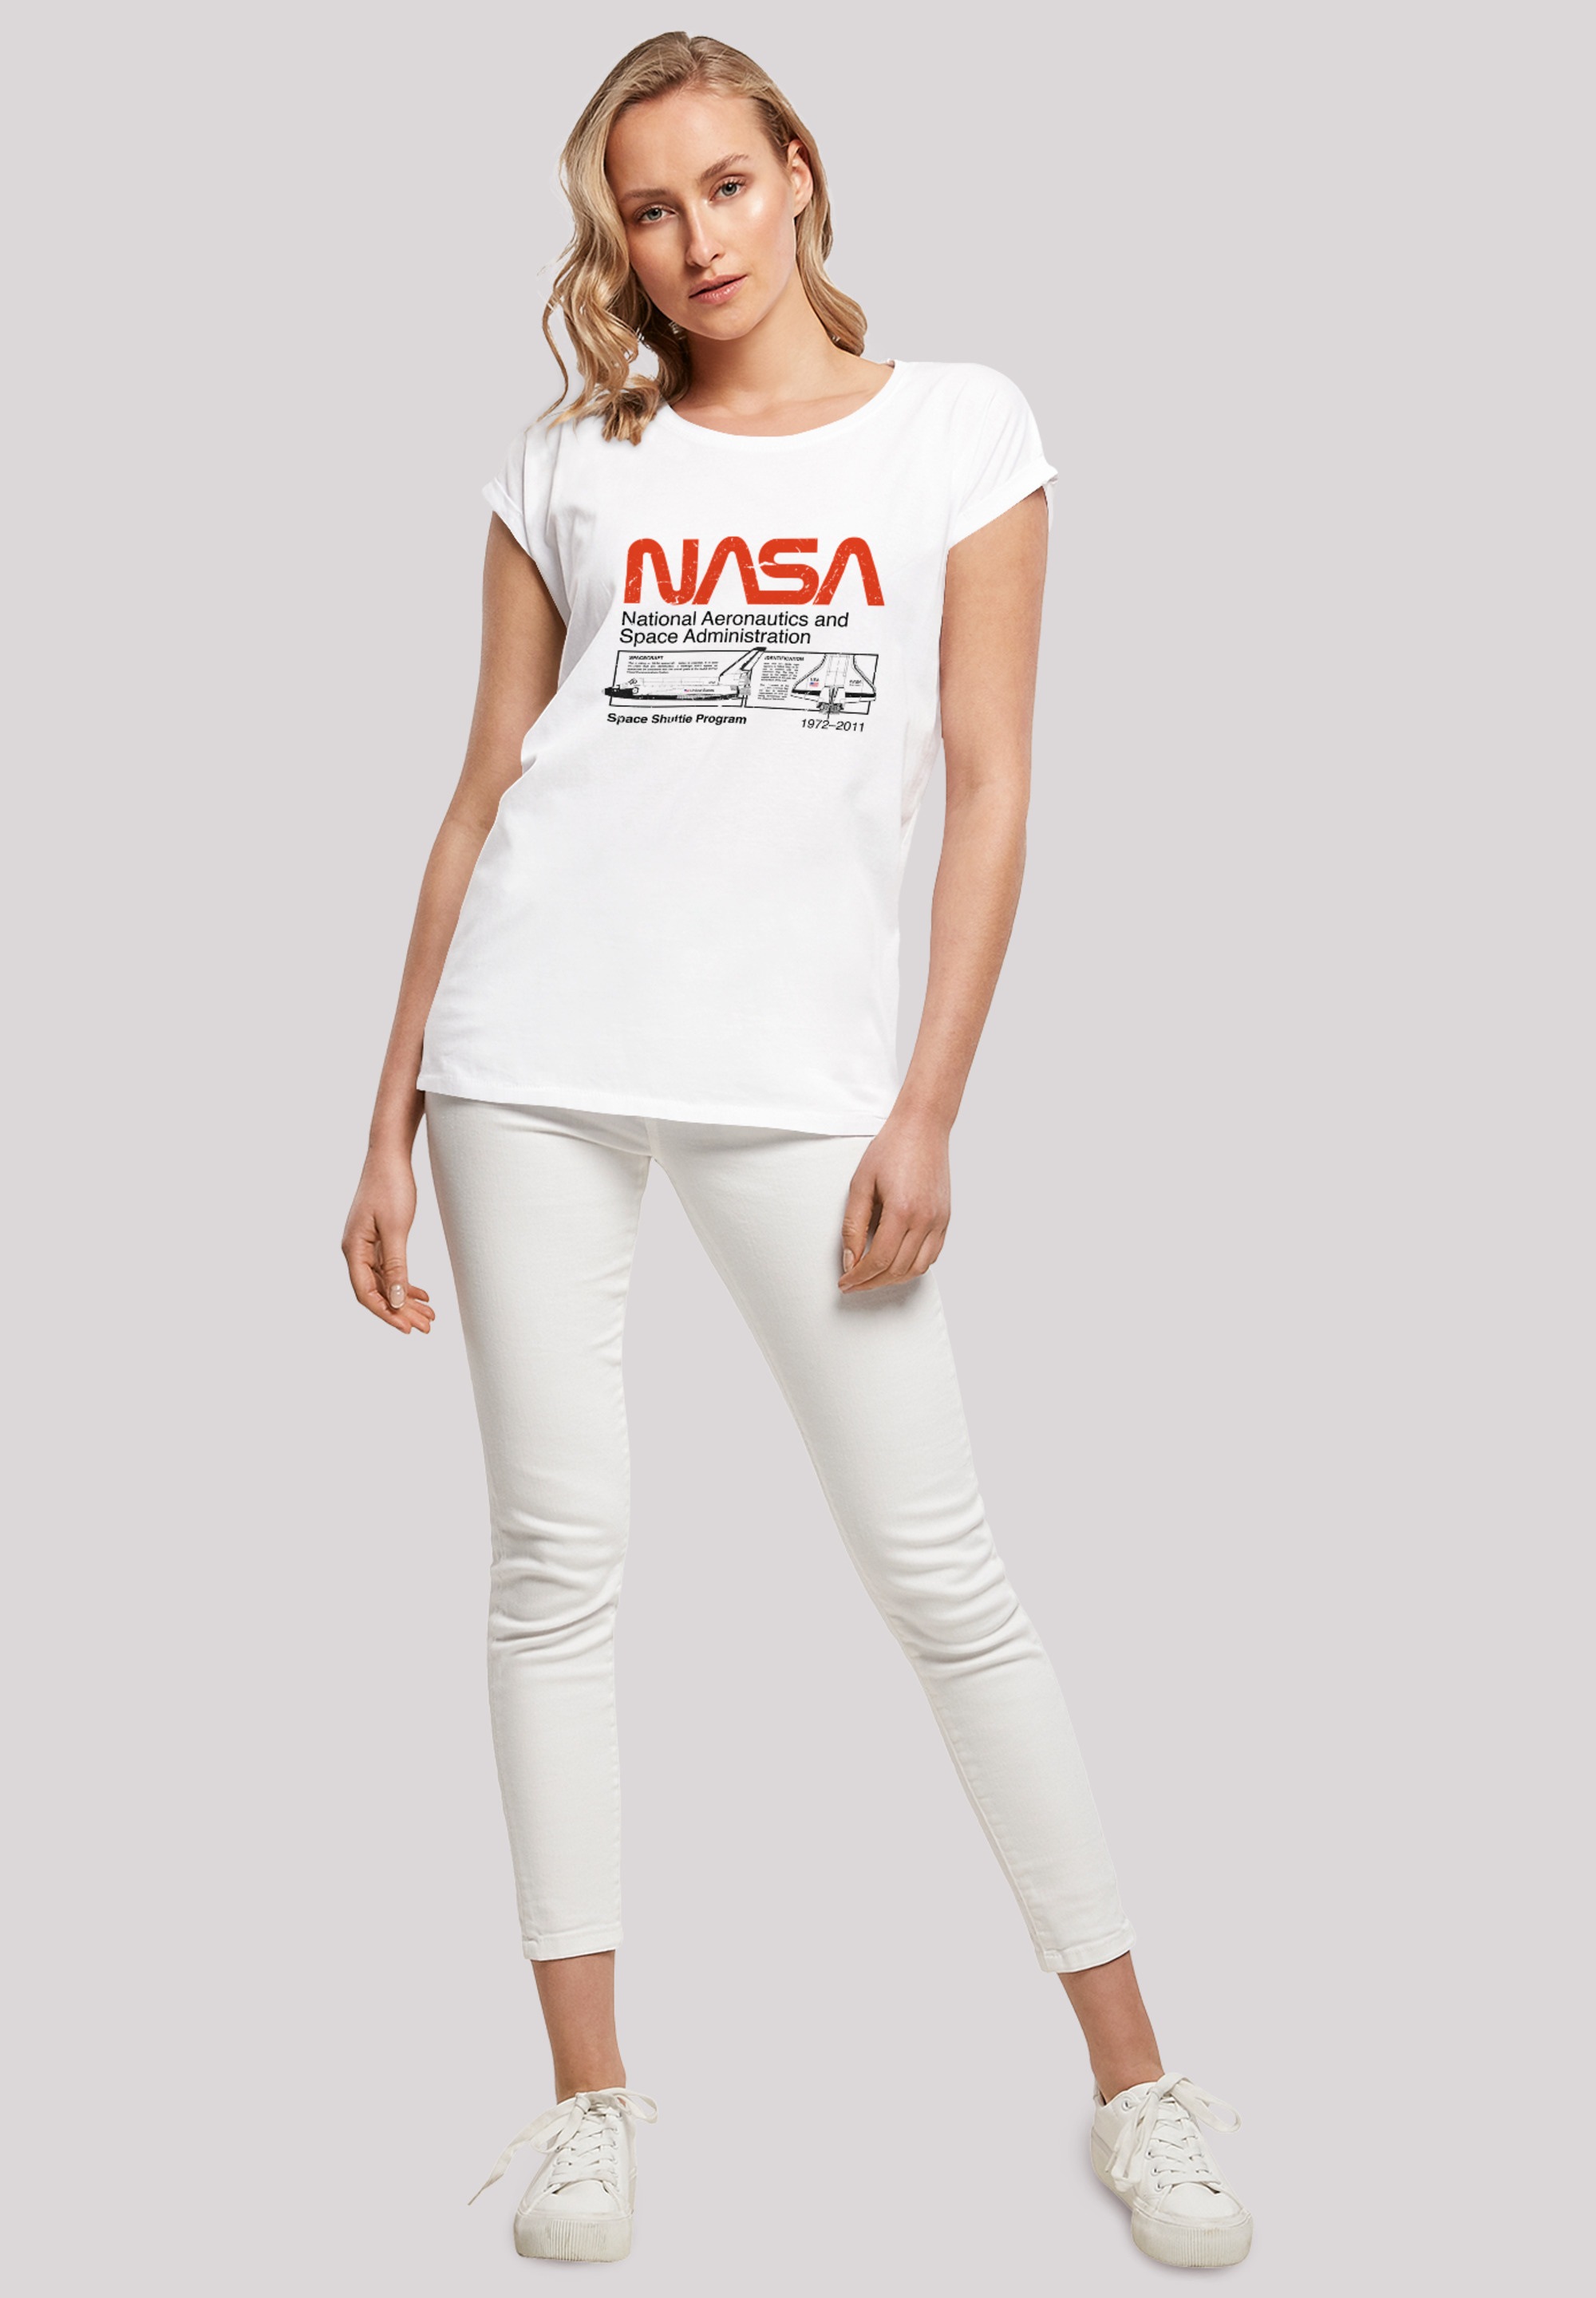 F4NT4STIC T-Shirt »NASA Classic Space Shuttle White«, Damen,Premium Merch,Regular-Fit,Kurze Ärmel,Bedruckt